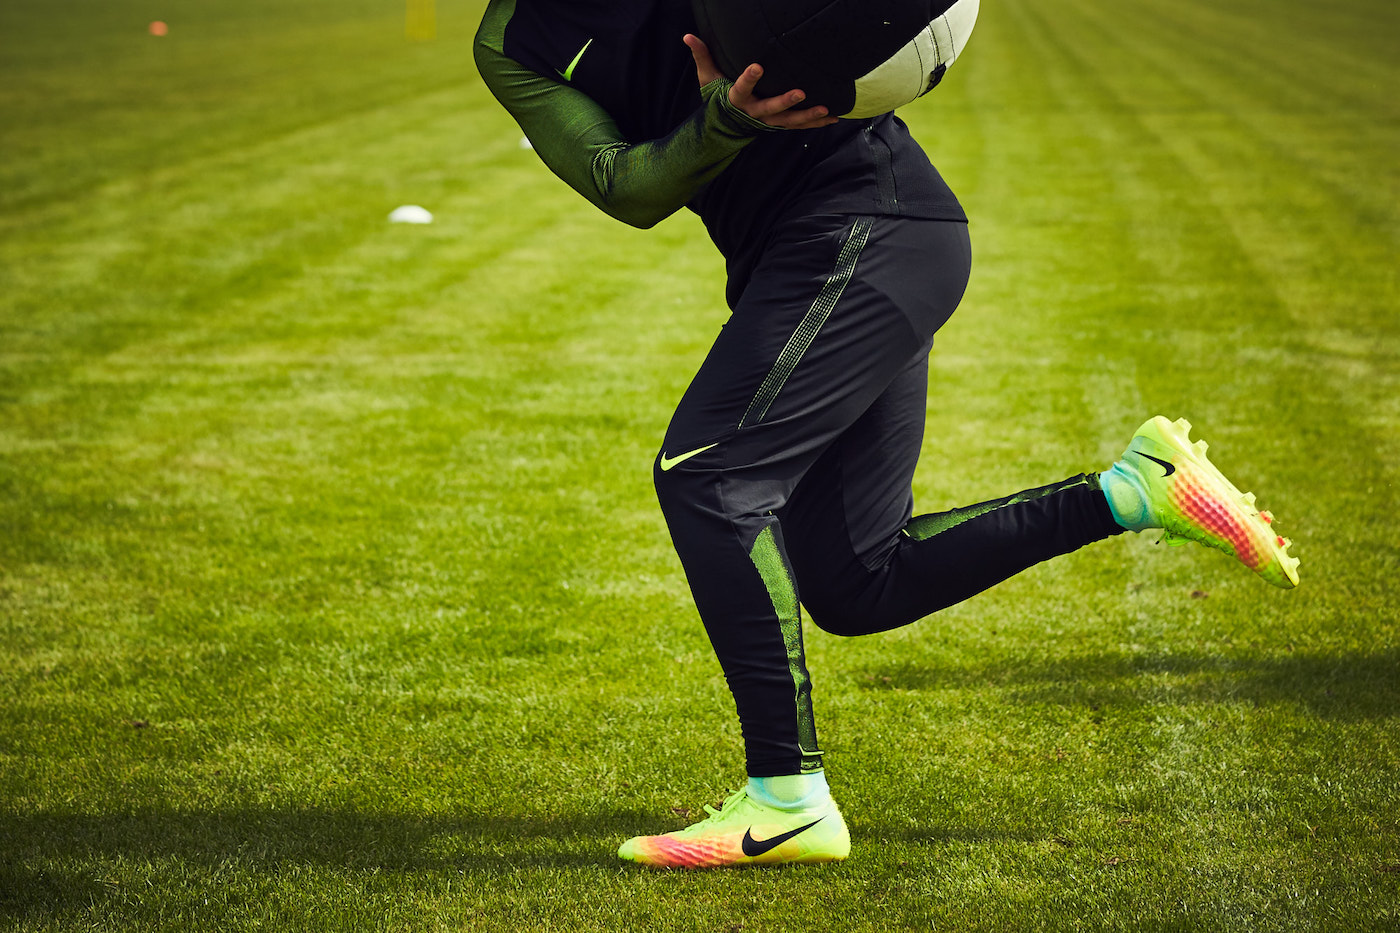 Poderoso perspectiva Margarita Nike Football apuesta por la creatividad en el campo con sus nuevas Magista  2 | 25 Gramos